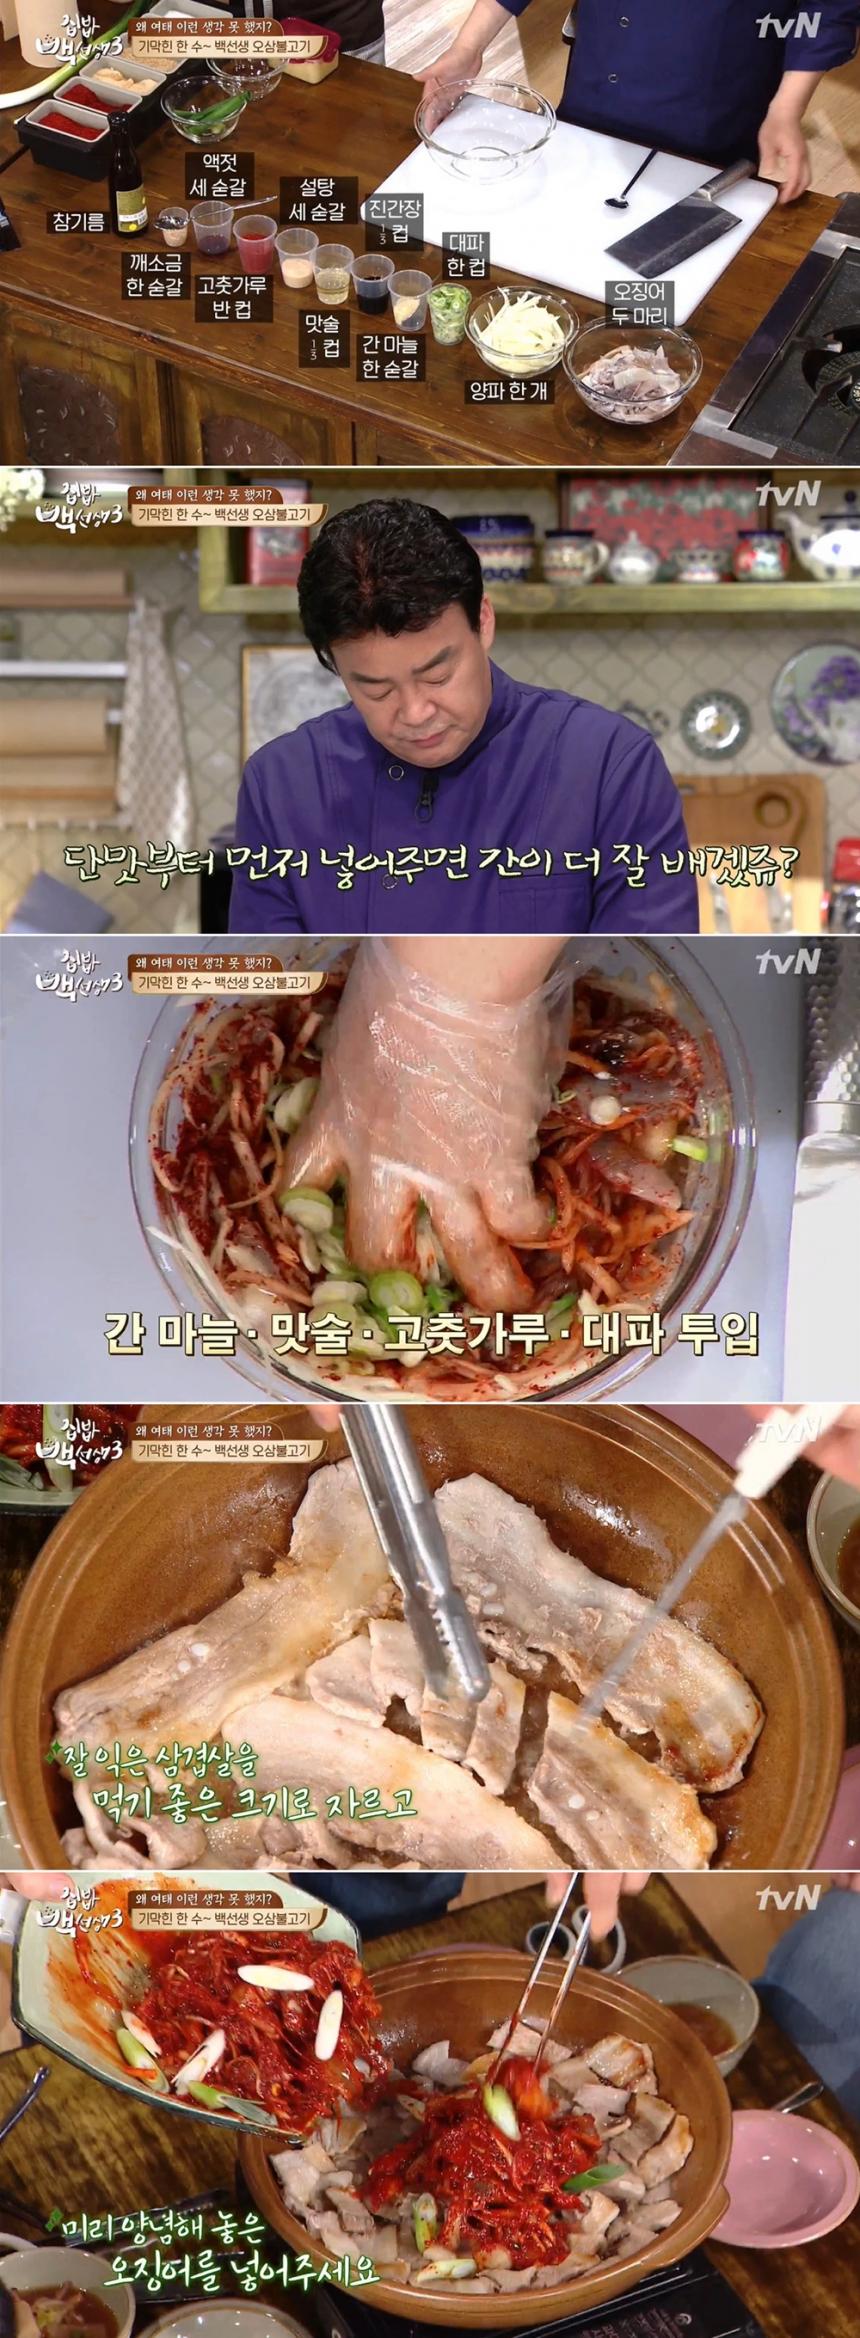 ‘집밥 백선생3’ 백종원 오삼불고기 레시피 / tvN ‘집밥 백선생3’ 방송 캡처